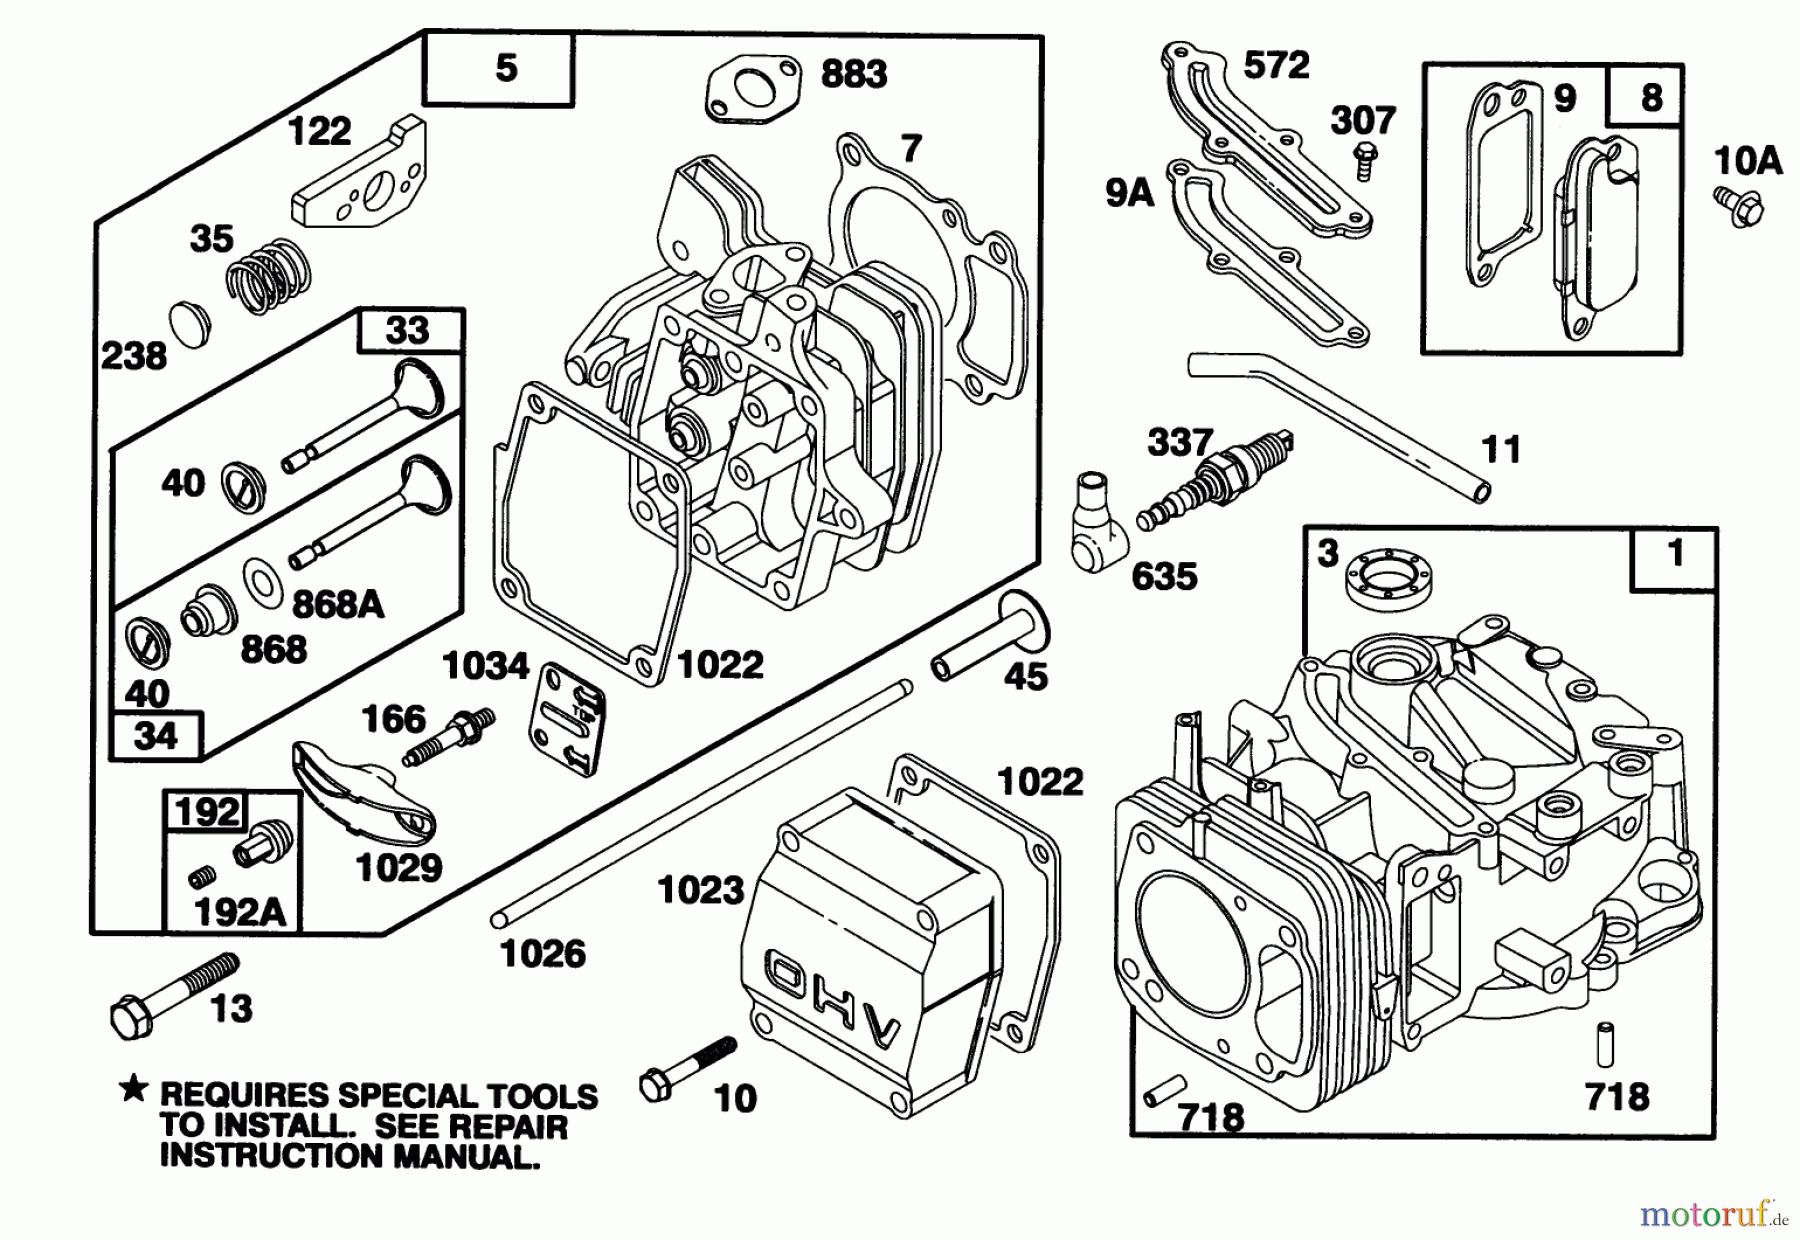  Toro Neu Mowers, Walk-Behind Seite 1 20464 - Toro Super Recycler Lawnmower, 1995 (5900001-5999999) ENGINE GTS 150 MODEL 97772-0118-02 #1